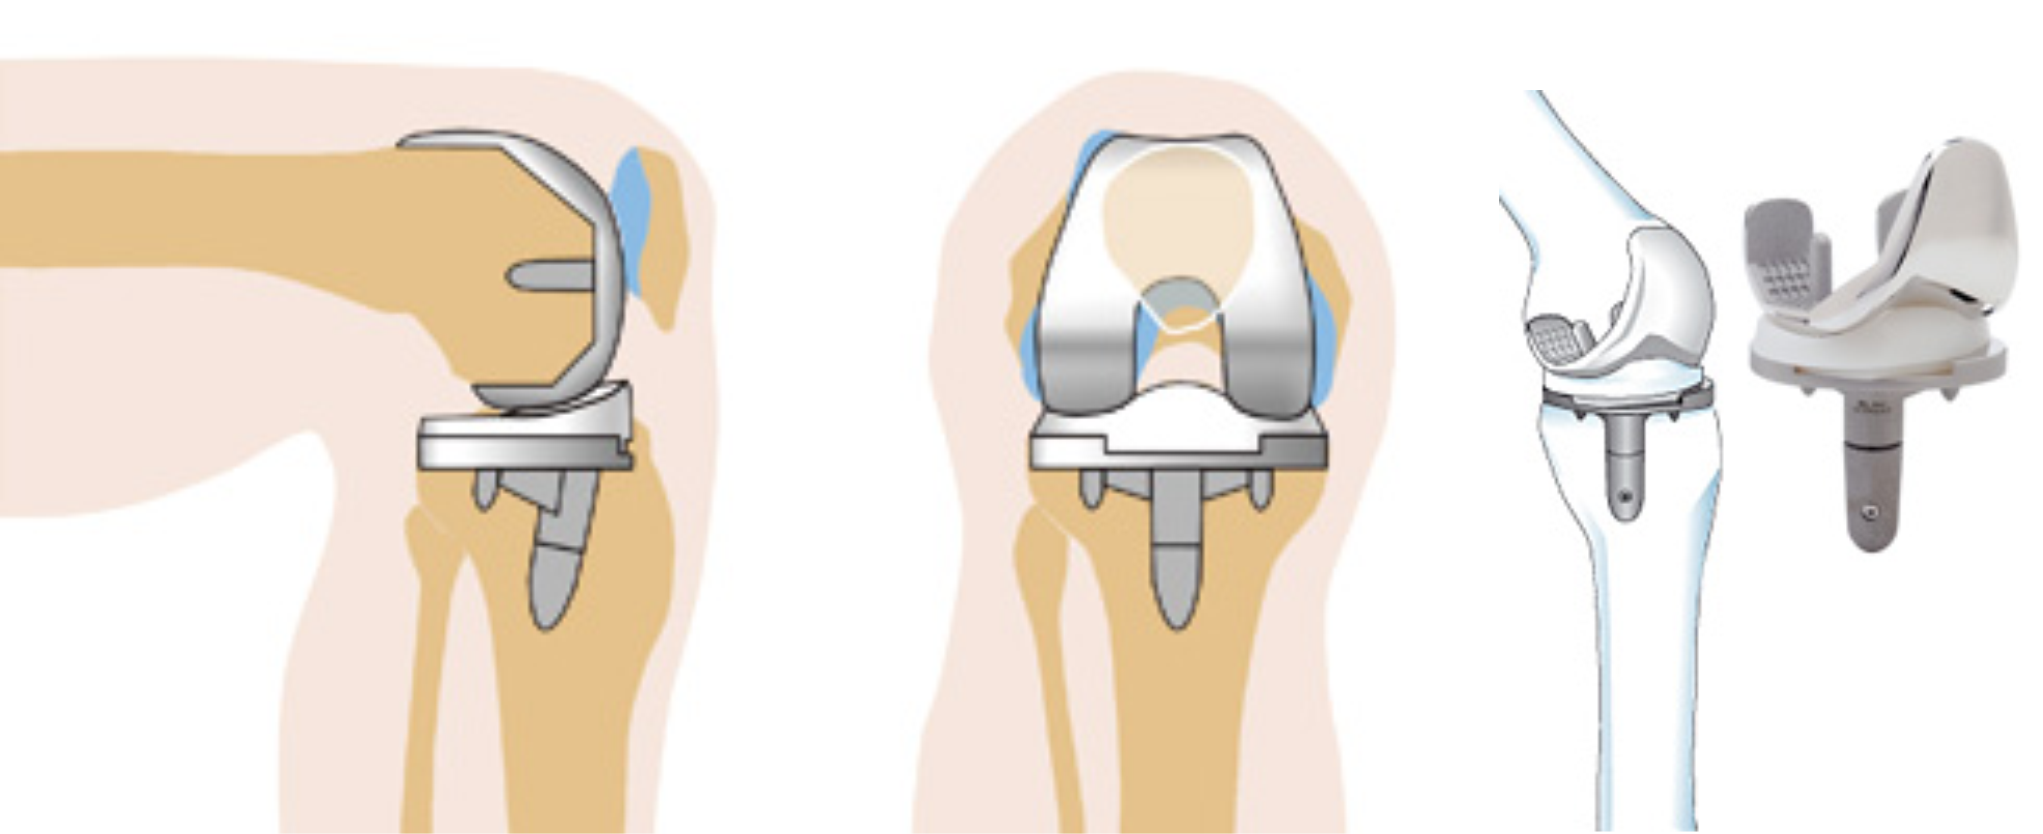 Эндопротез коленного сустава. Тотальное эндопротезирование коленного сустава DEPUY. Эндопротезирование коленного сустава этапы операции. Артроз коленного сустава эндопротез. Коленный сустав производители